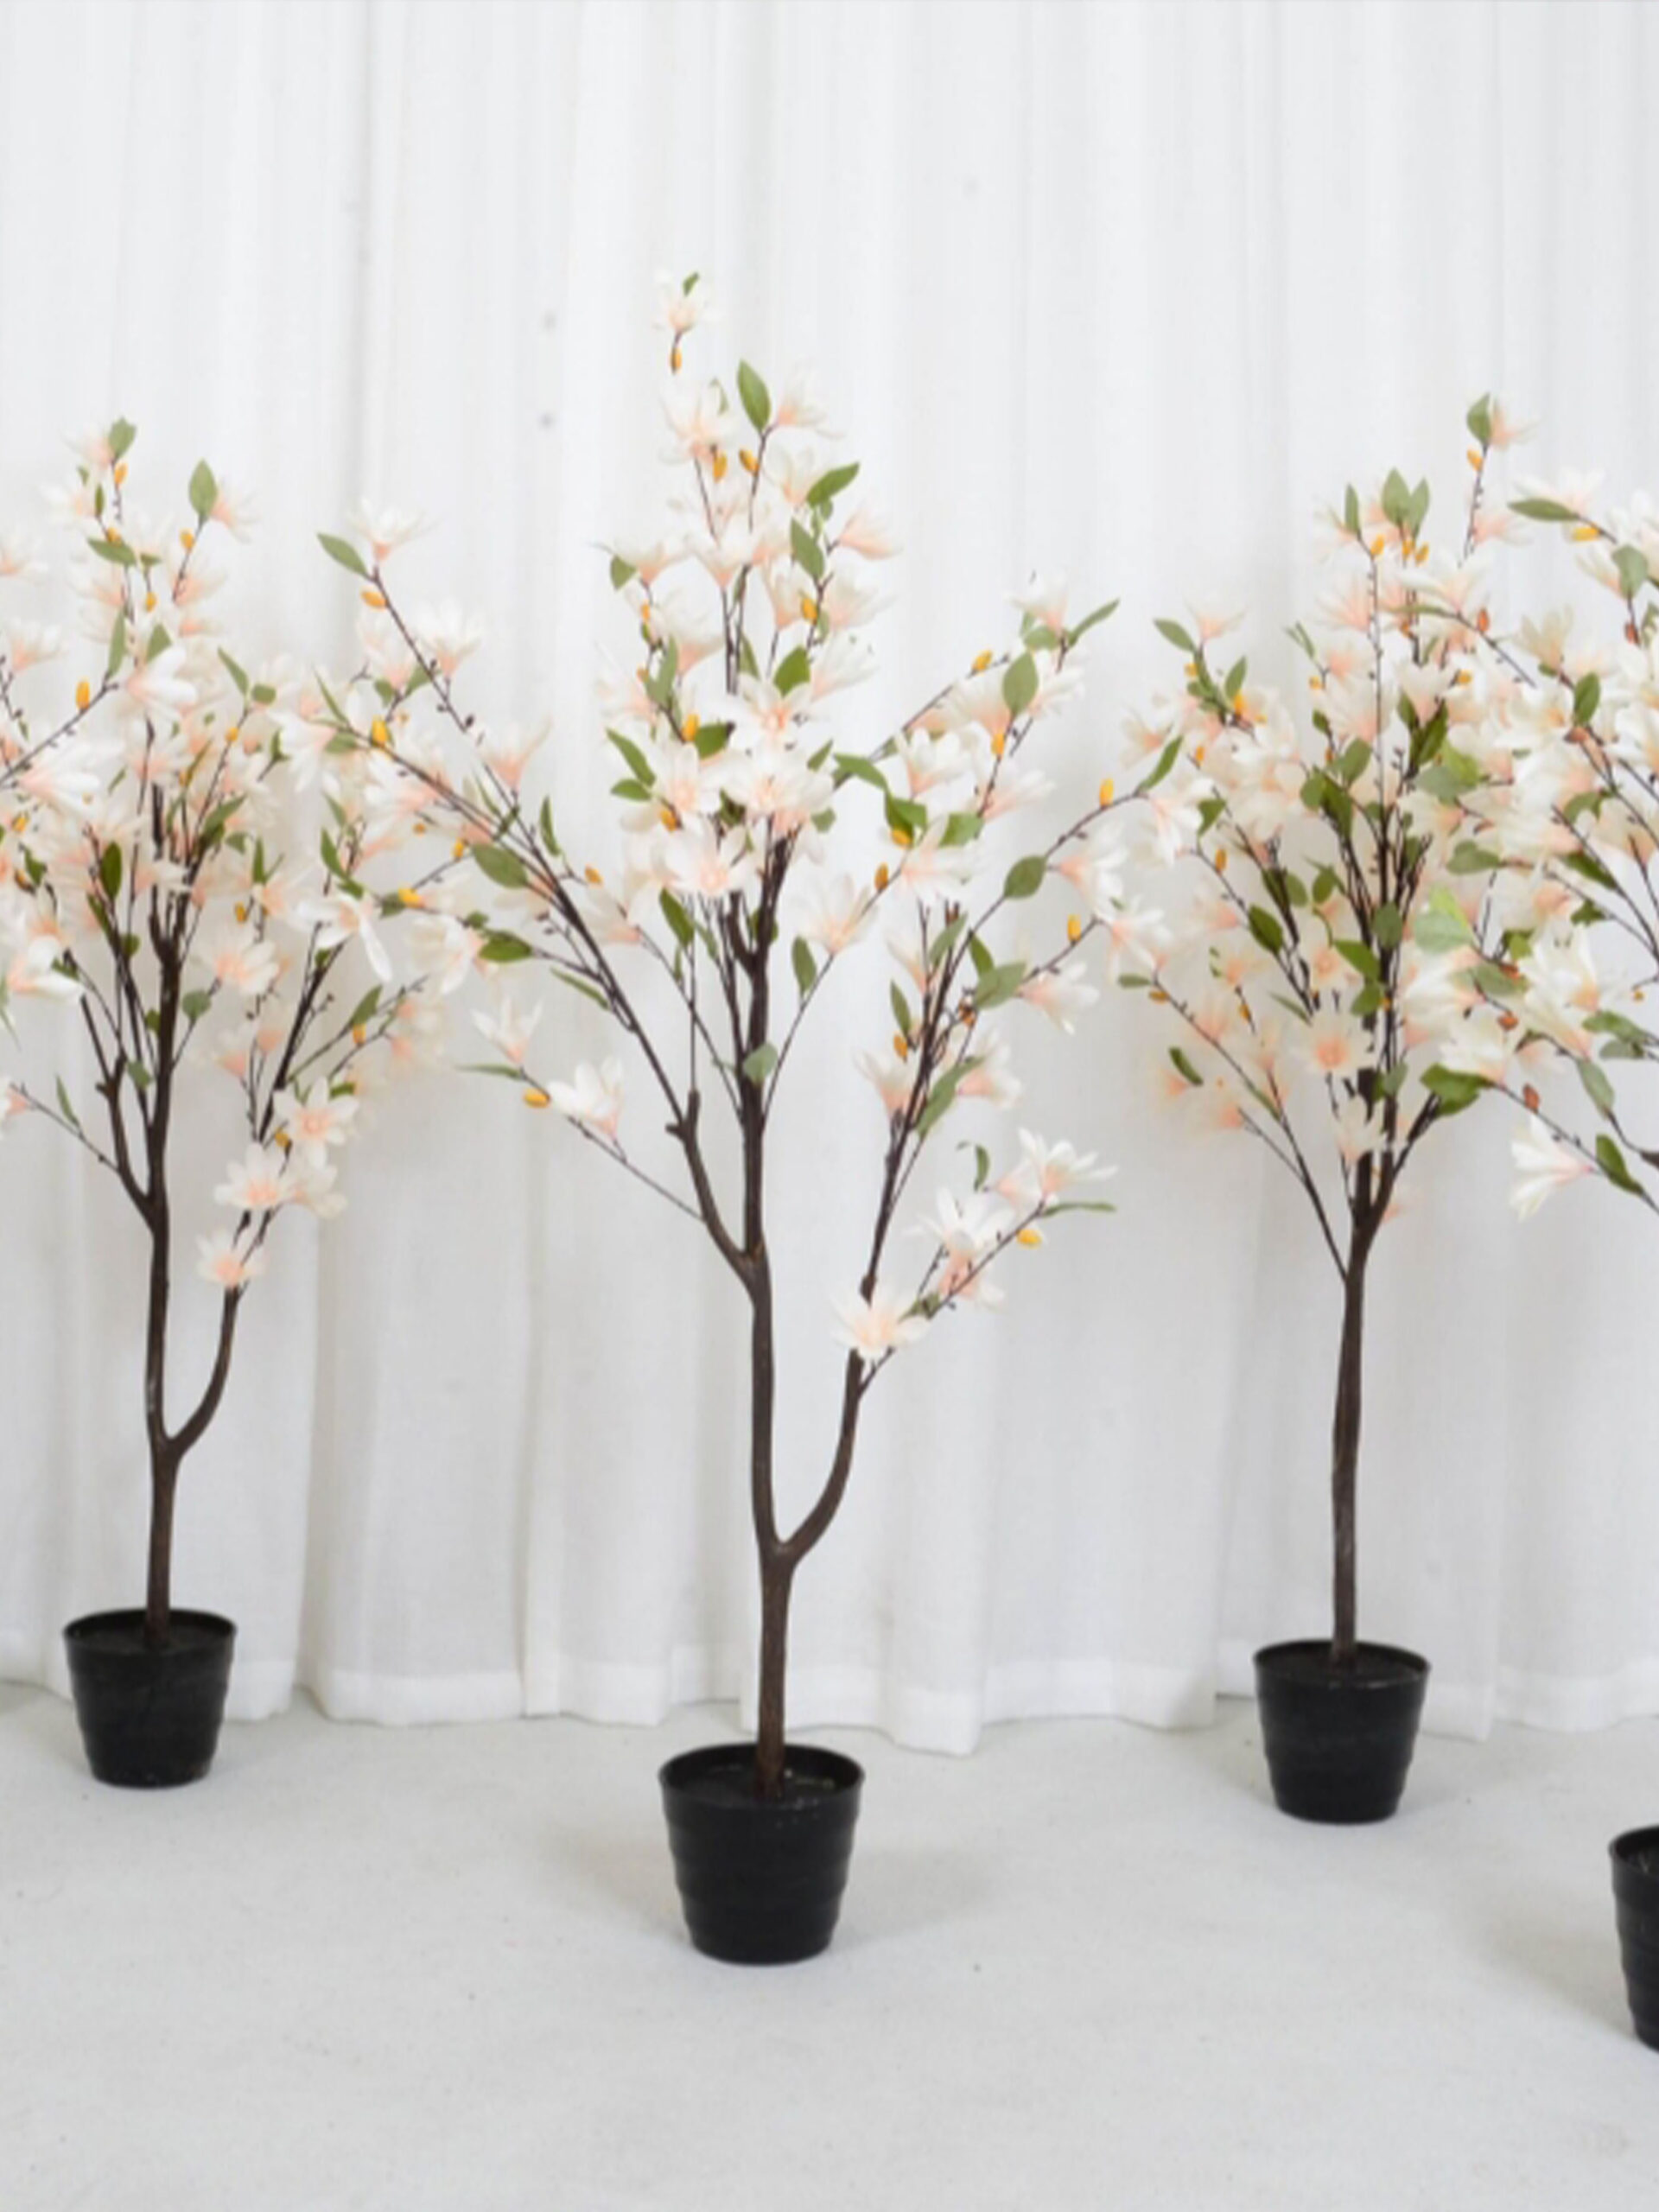 1.3 magnolia bonsai